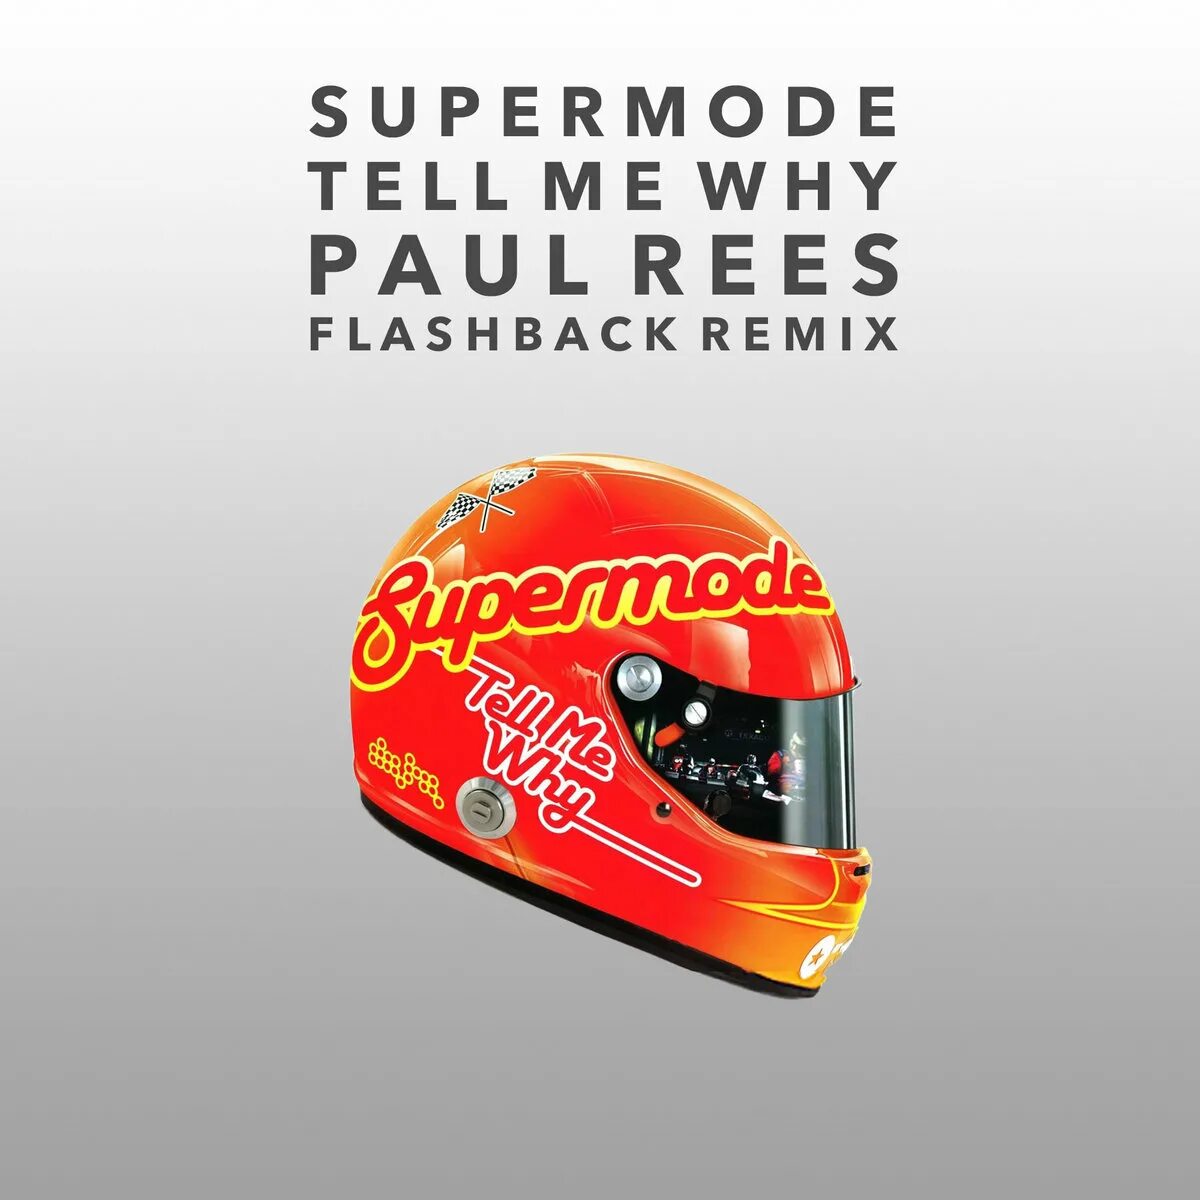 Supermode tell me why. Supermode tell me why обложка. Supermode tell me why фото. Supermode